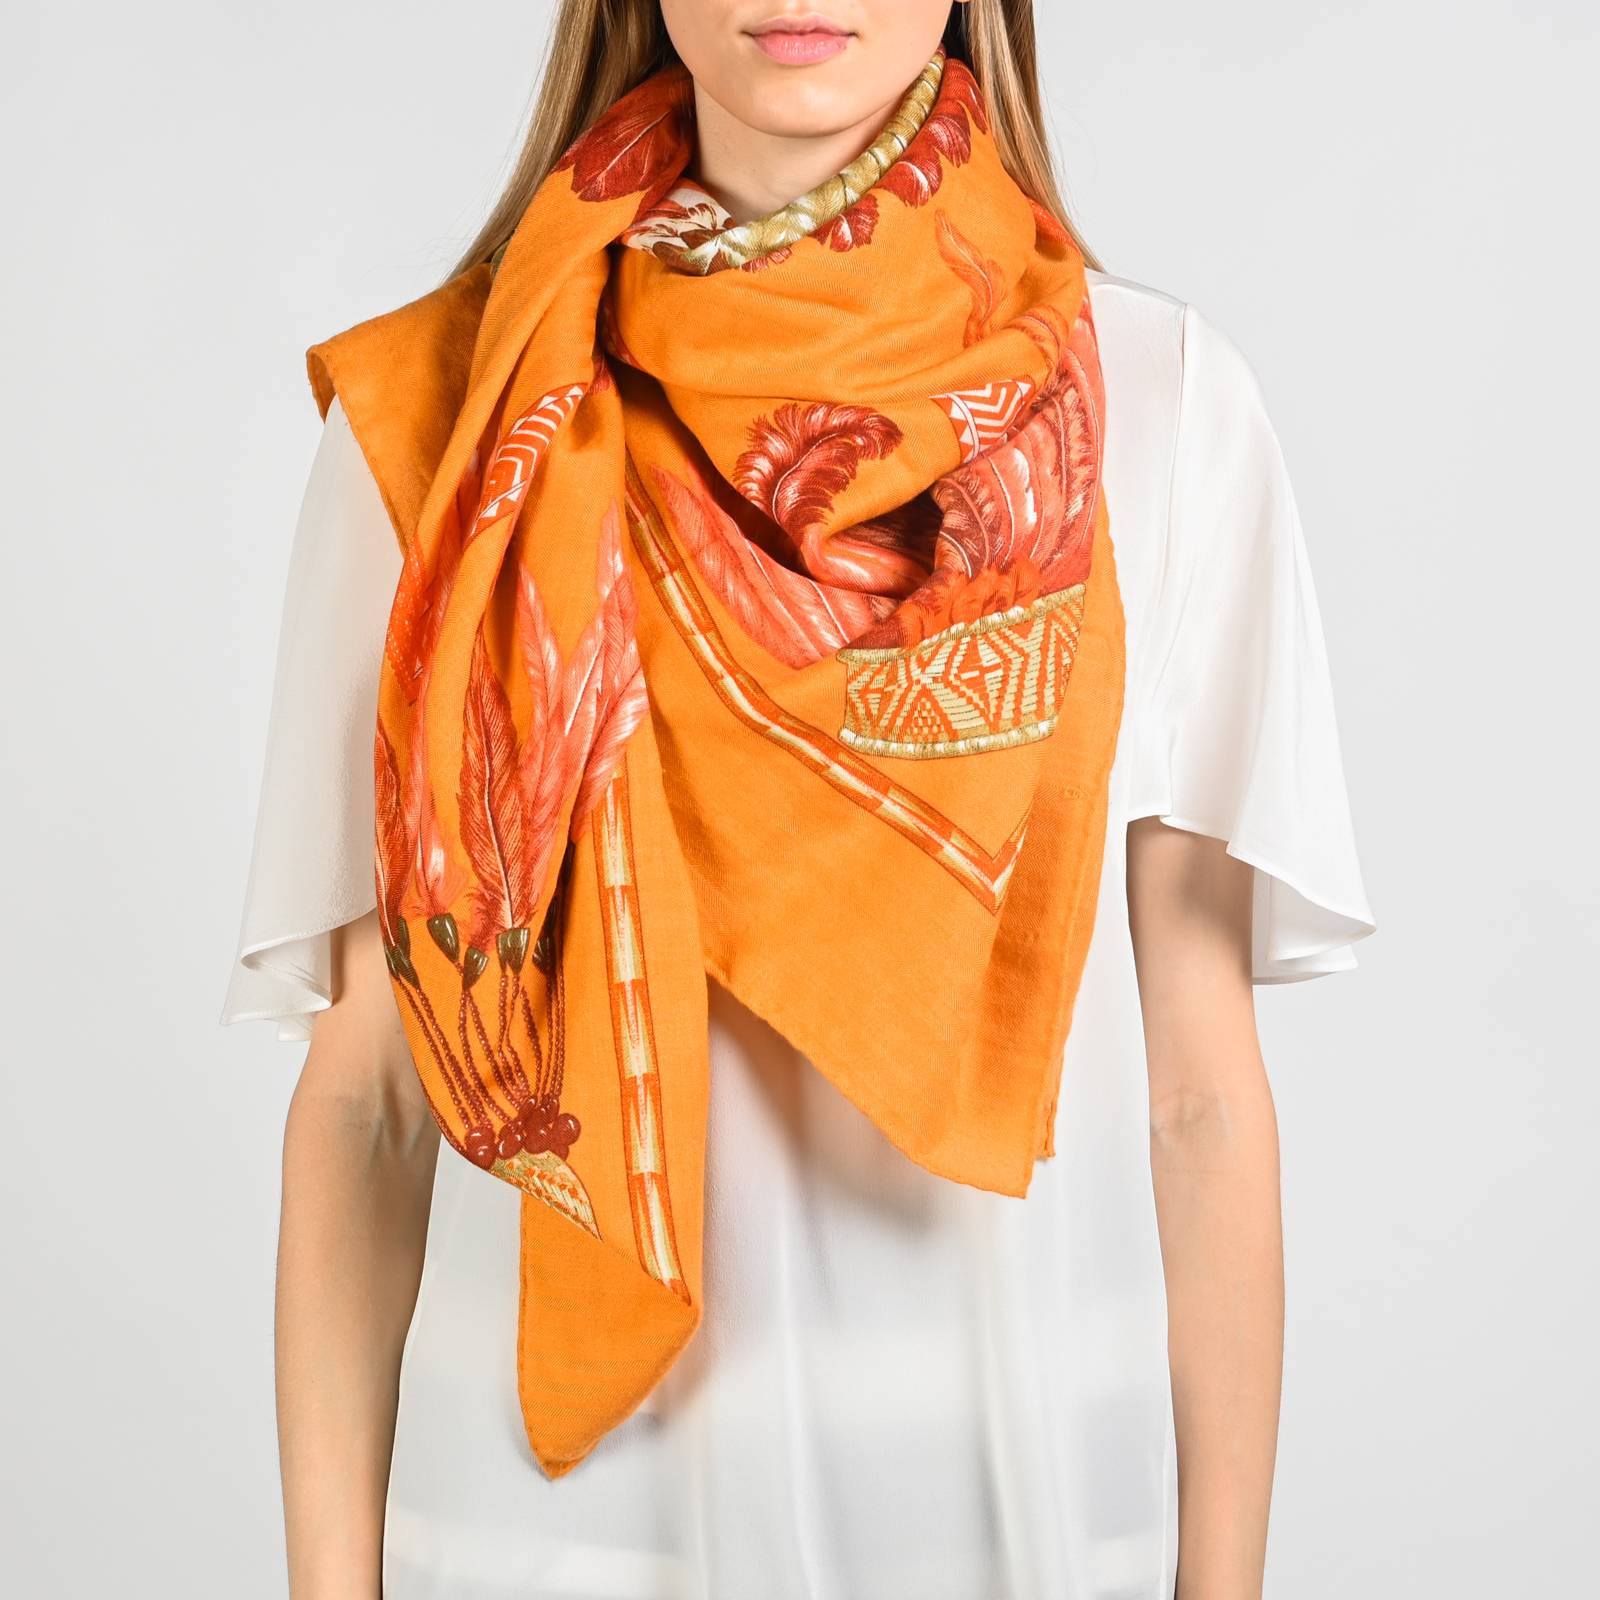 Хермес оранжевый платок